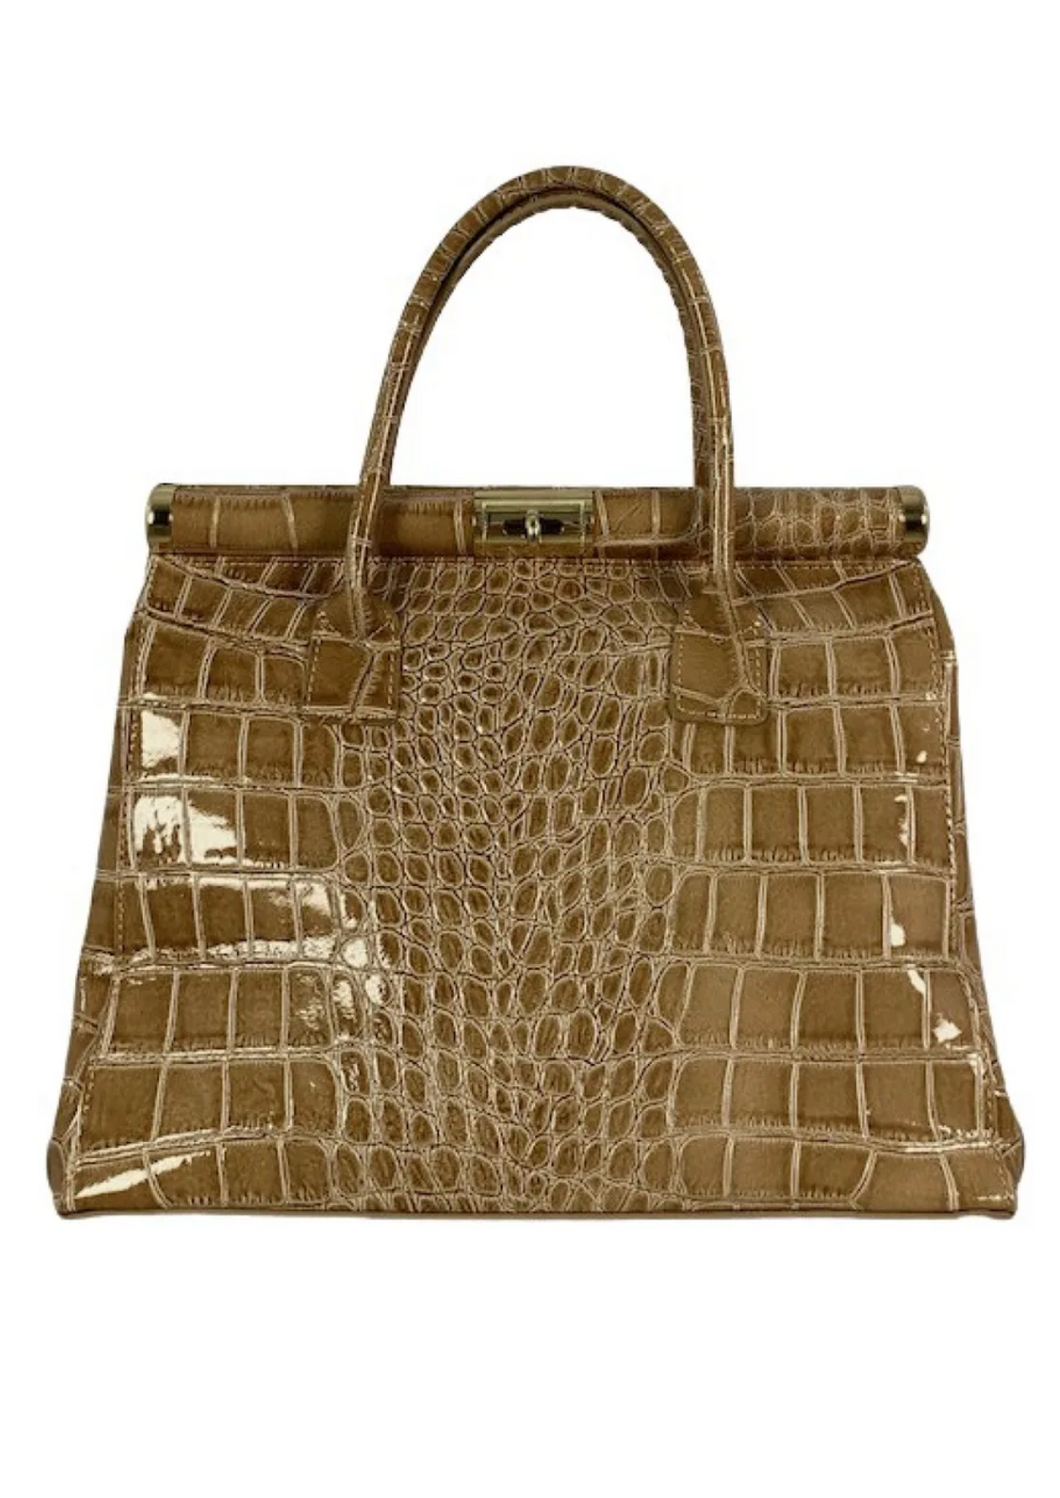 [SOLD] Unsigned Vintage Camel Leather Handbag